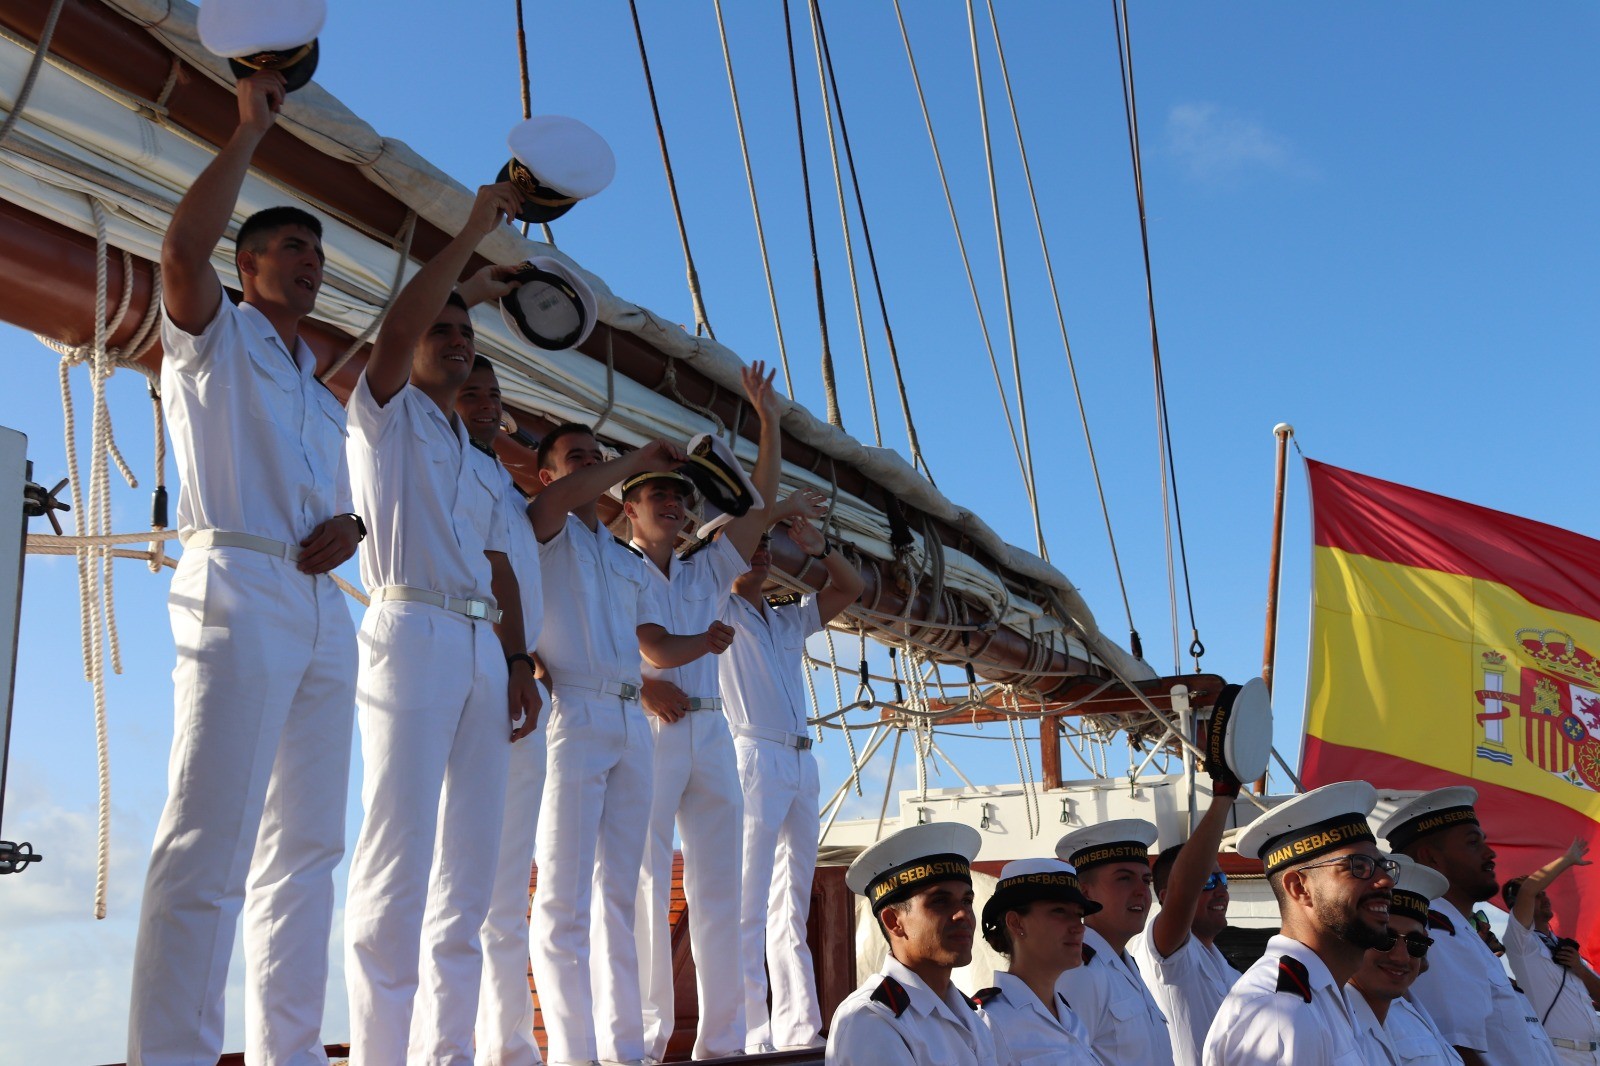 Port call of Spanish Navy training ship ‘Juan Sebastián de Elcano’ in Curaçao.